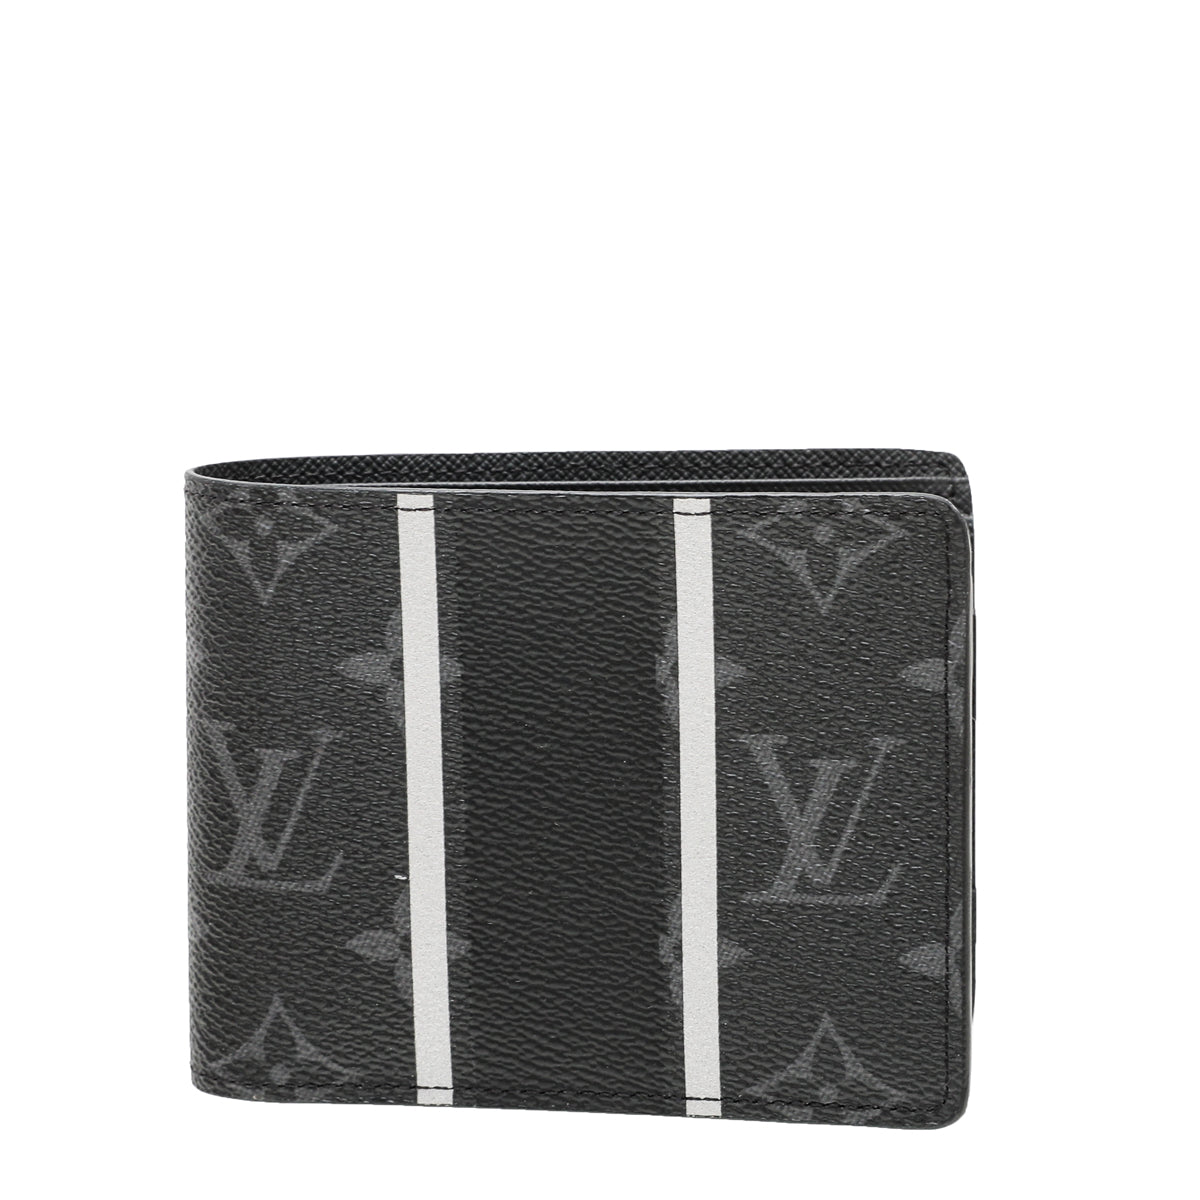 Louis Vuitton Bicolor Flash Fragment Multiple Wallet – The Closet